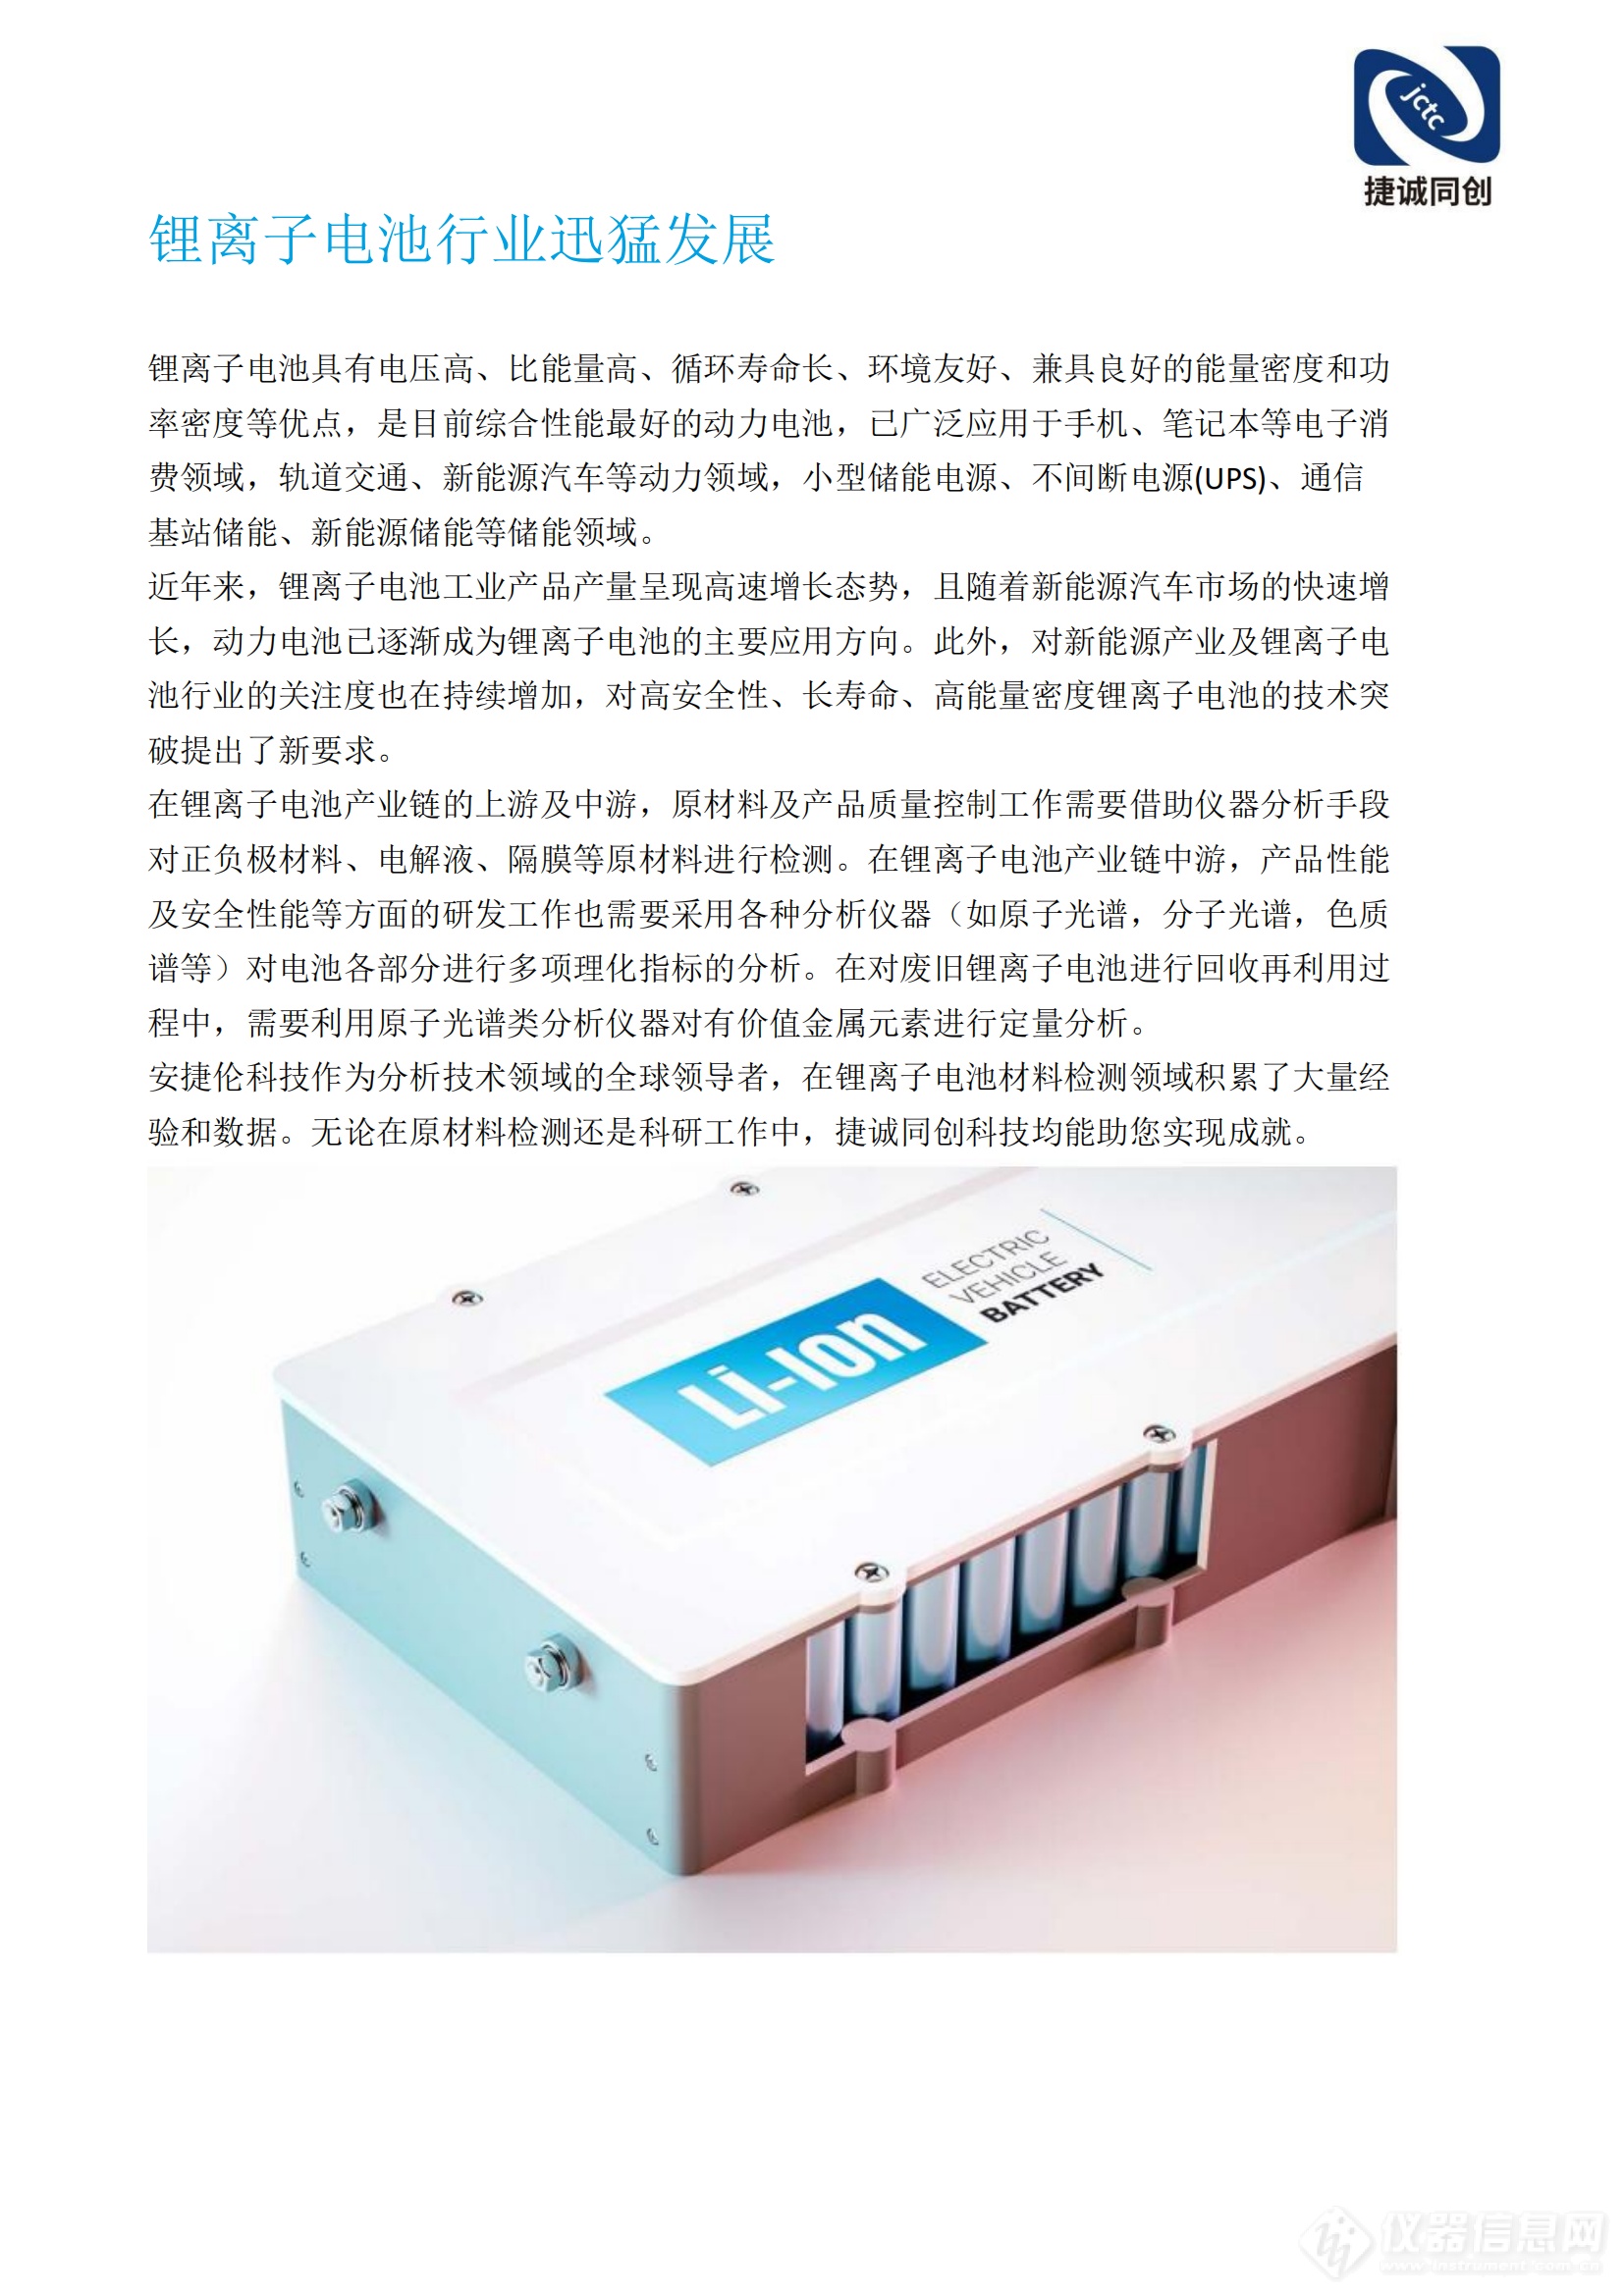 北京捷诚同创科技有限公司锂电池解决方案(2)_01.png